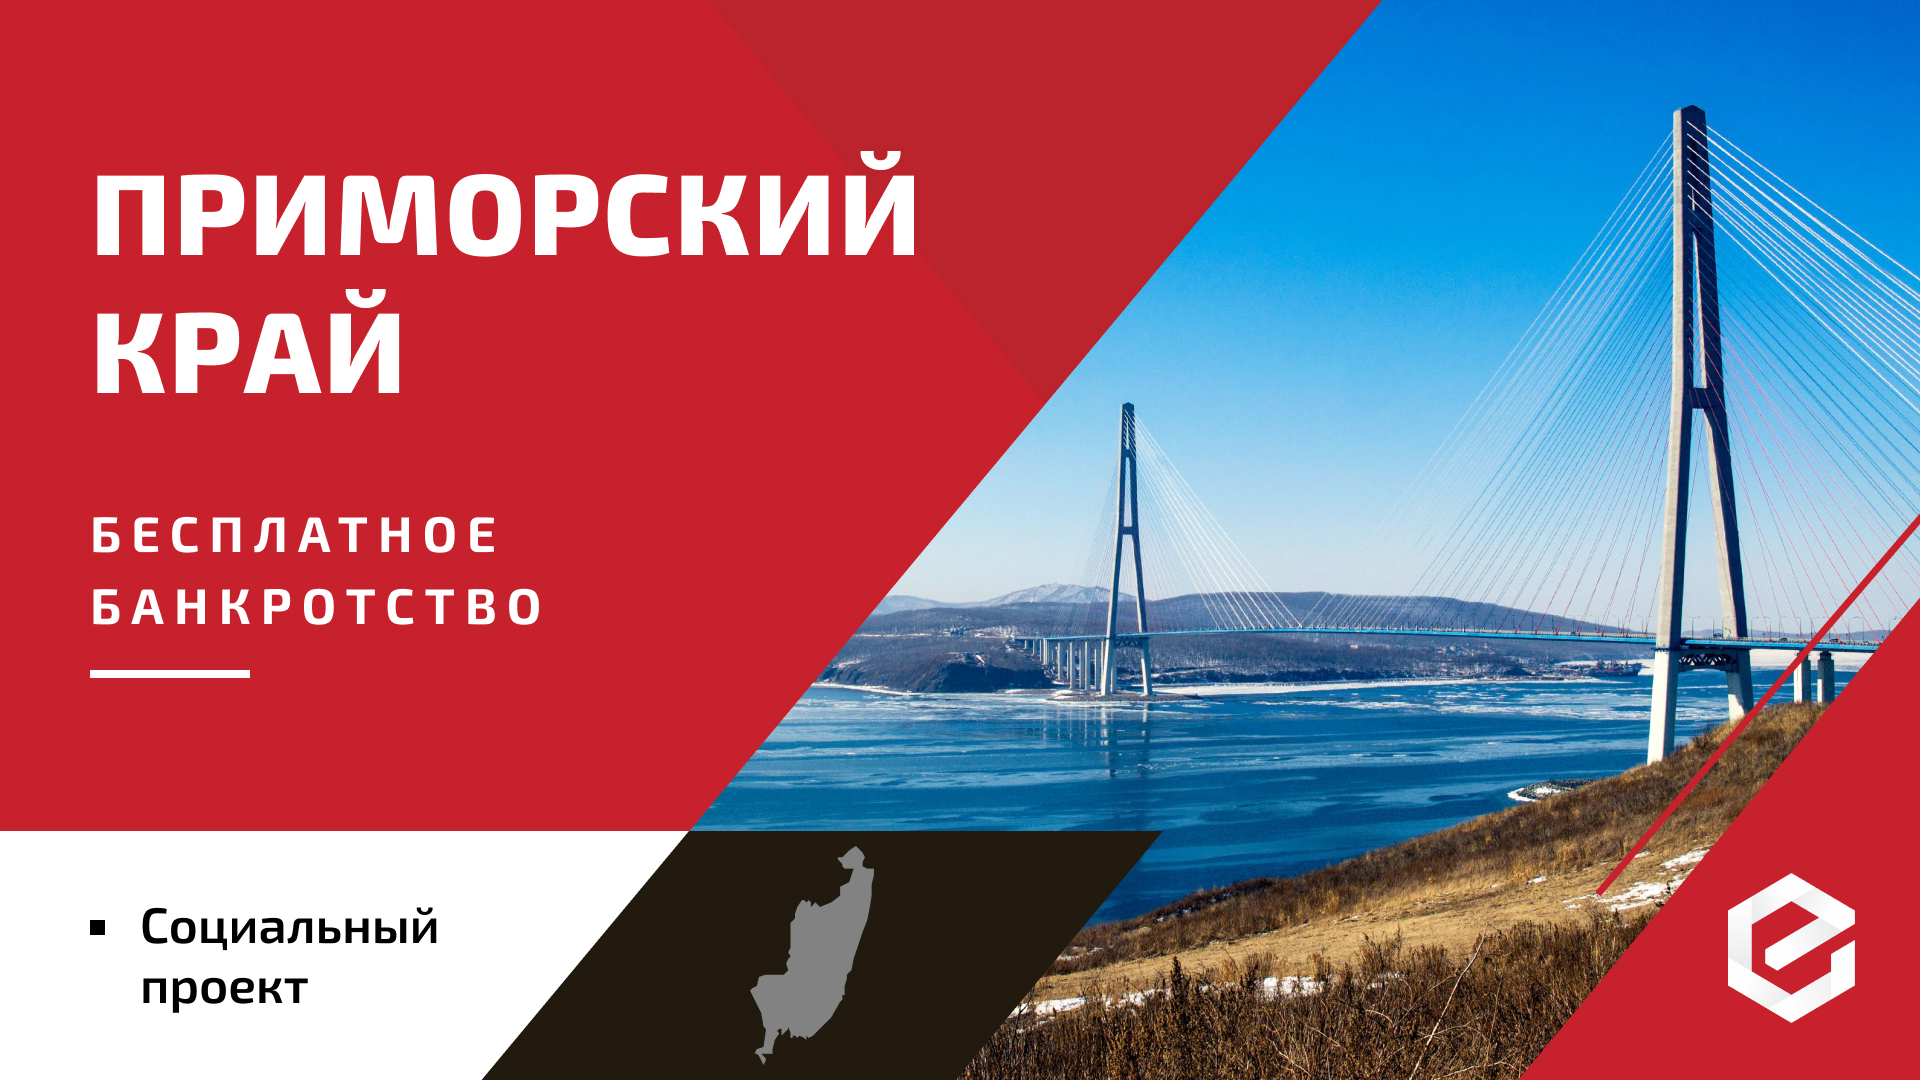 Долги и кредиты можно списать бесплатно в Приморском крае